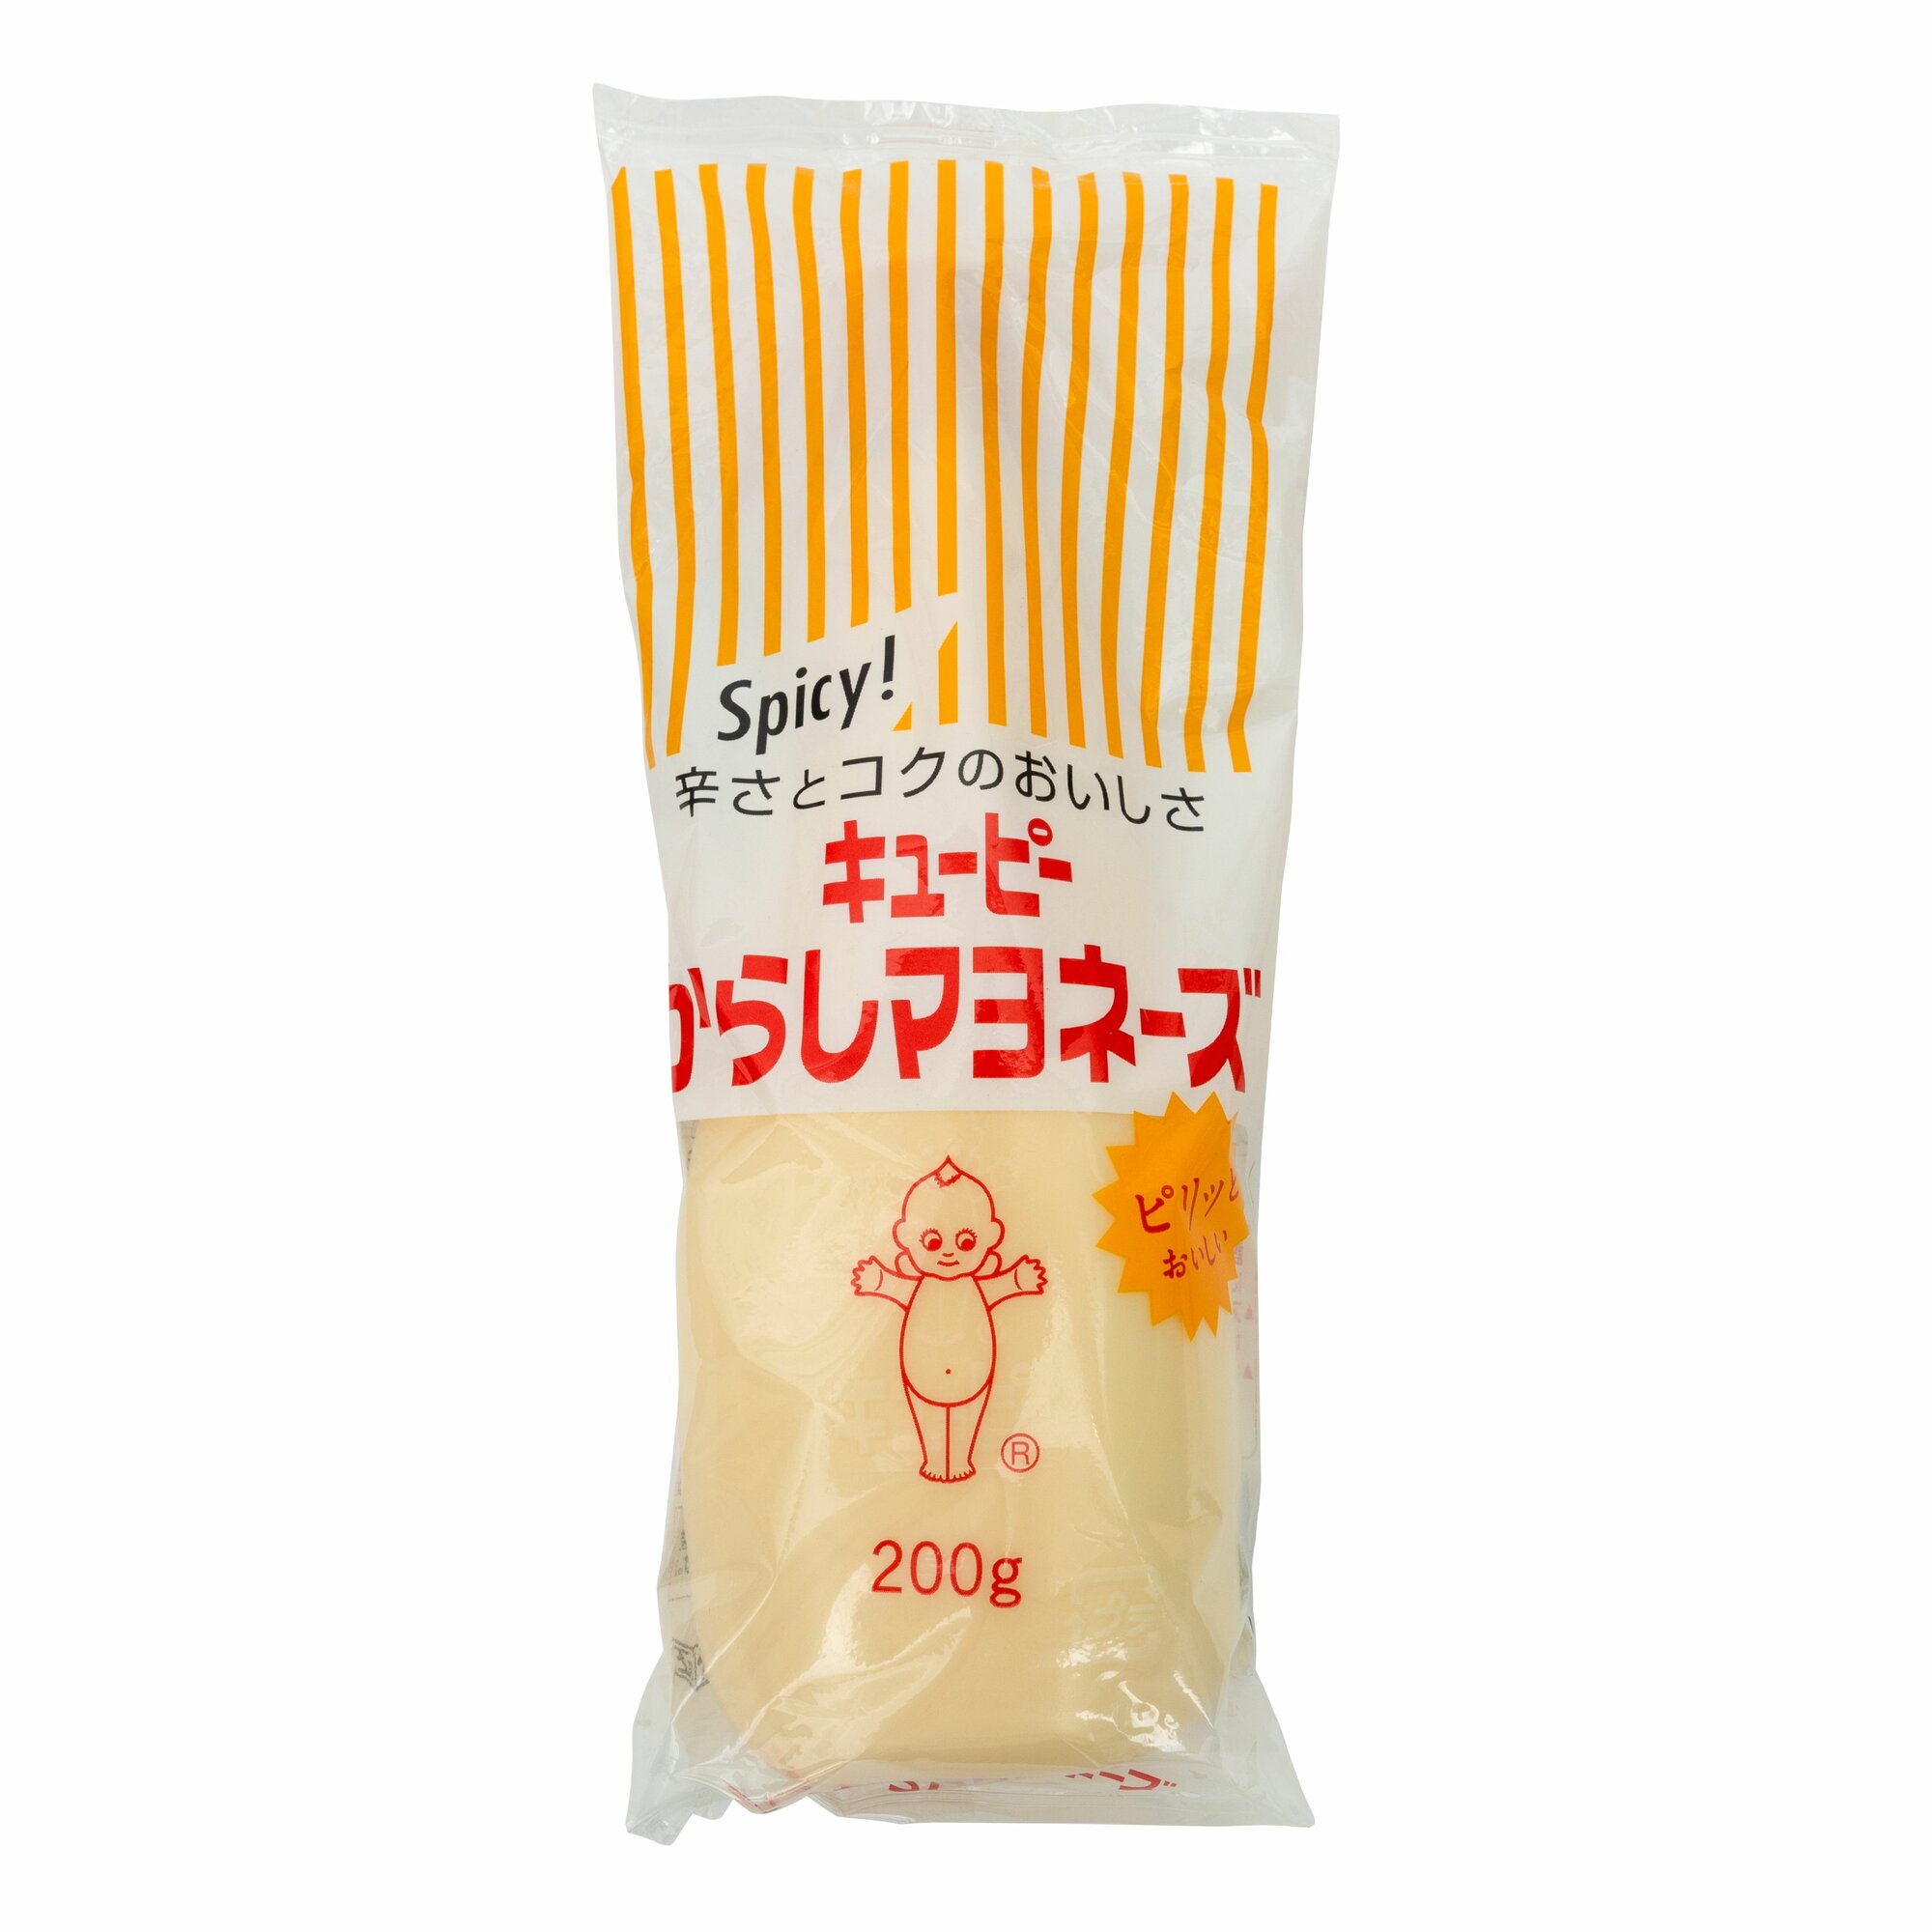 Японский майонез Kewpie пикантный с горчицей, заправка для салата, универсальный, 200 г, Kewpie Co. JAPAN